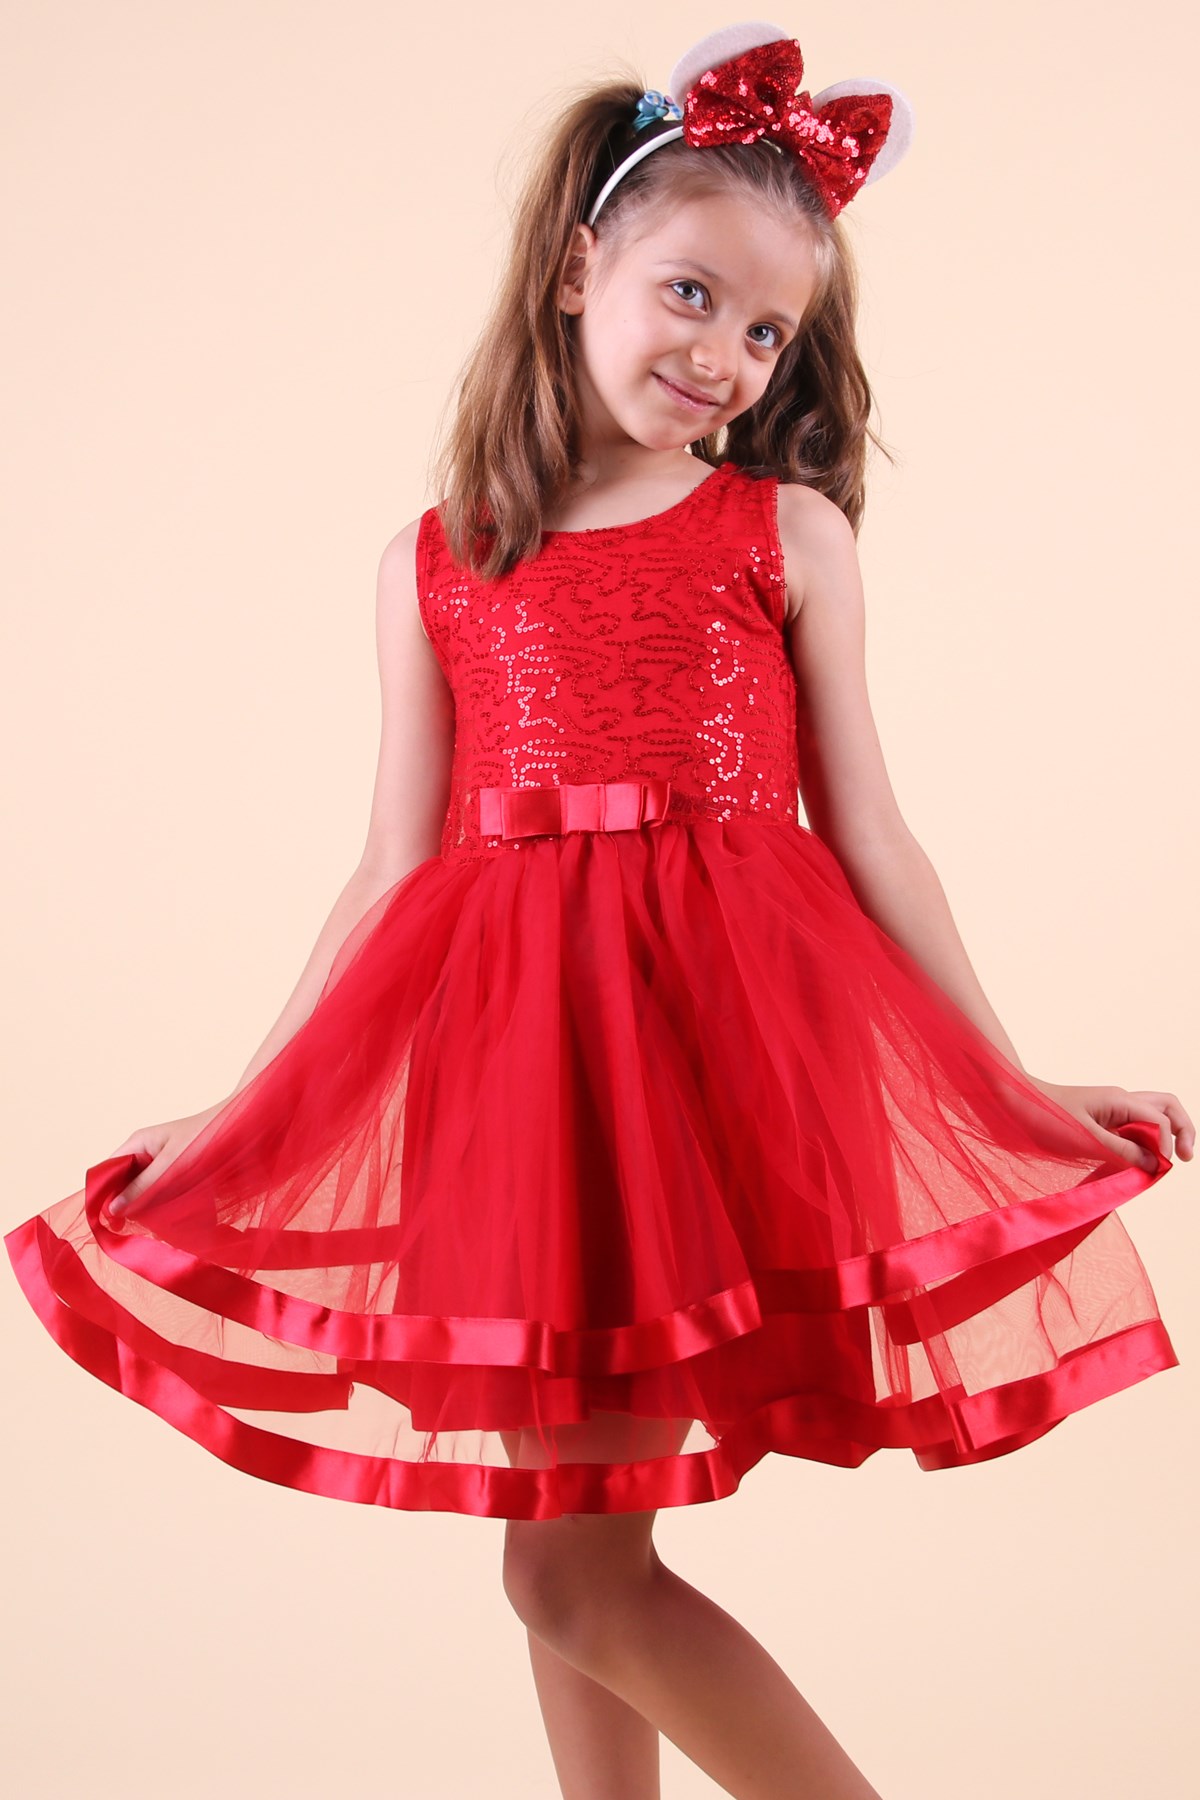 Pullu Saten Fiyonklu Kırmızı - Kız Çocuk Elbisesi 5-10 Yaş